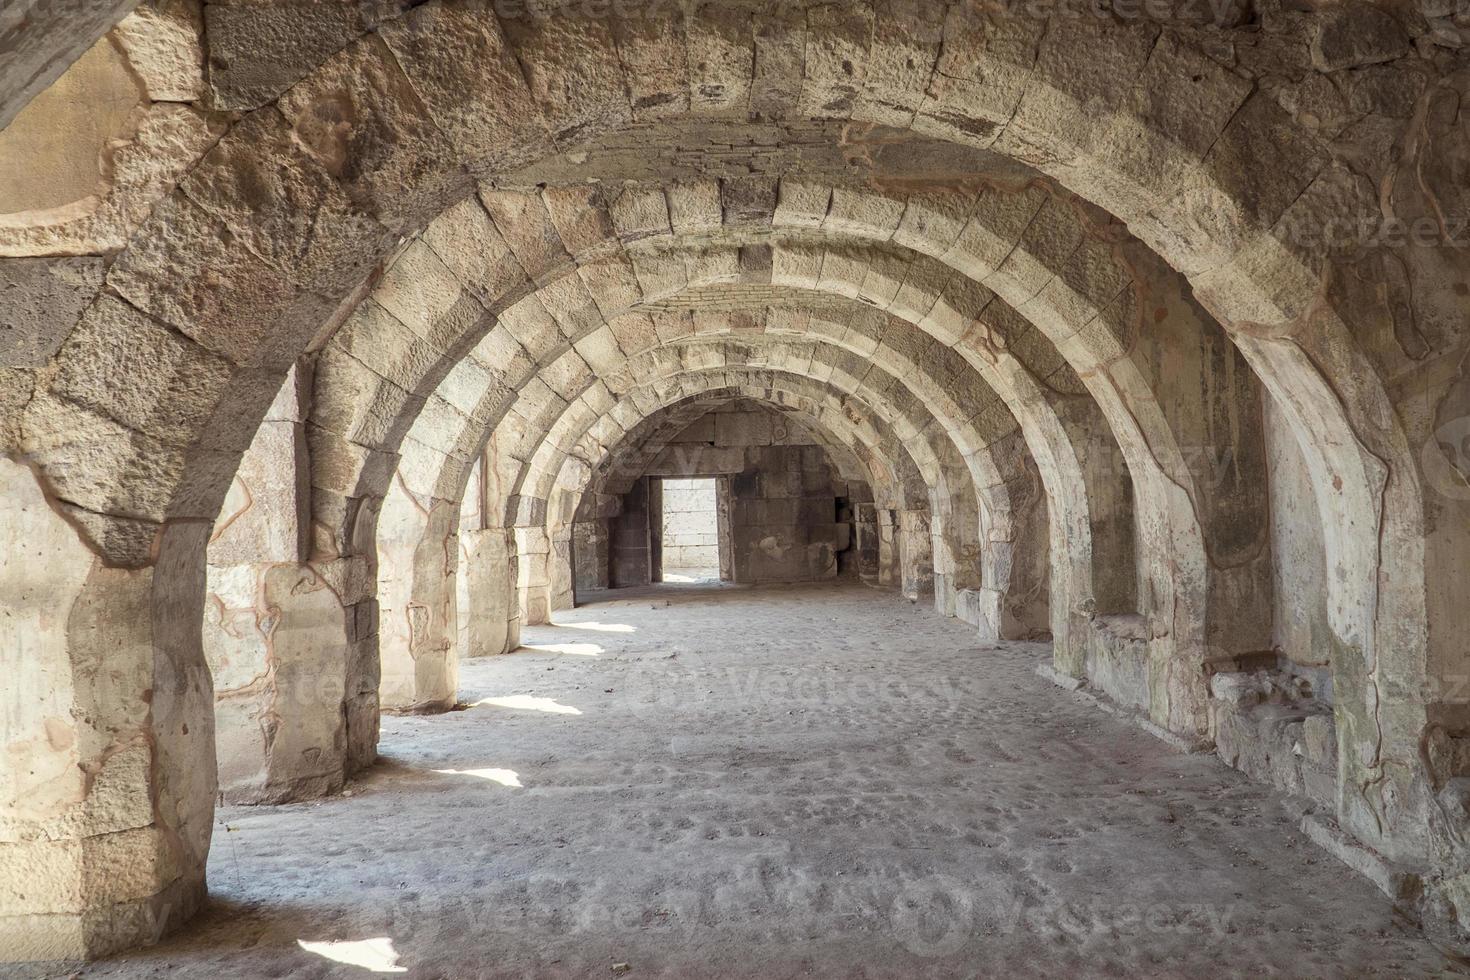 die historische Agora und Säulen foto